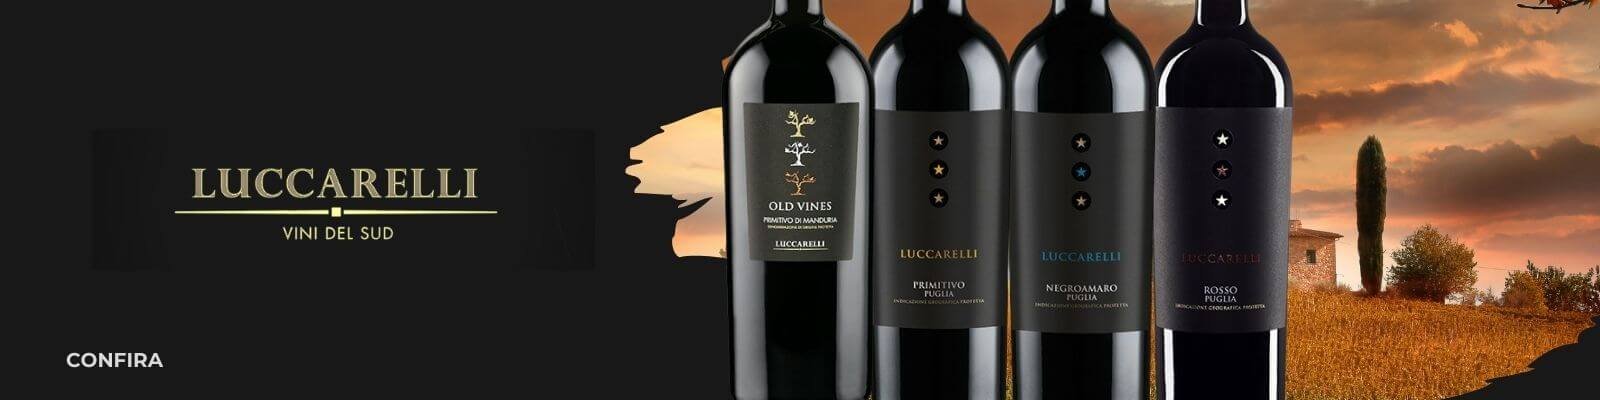 full-luccarreli-vinhos-italianos